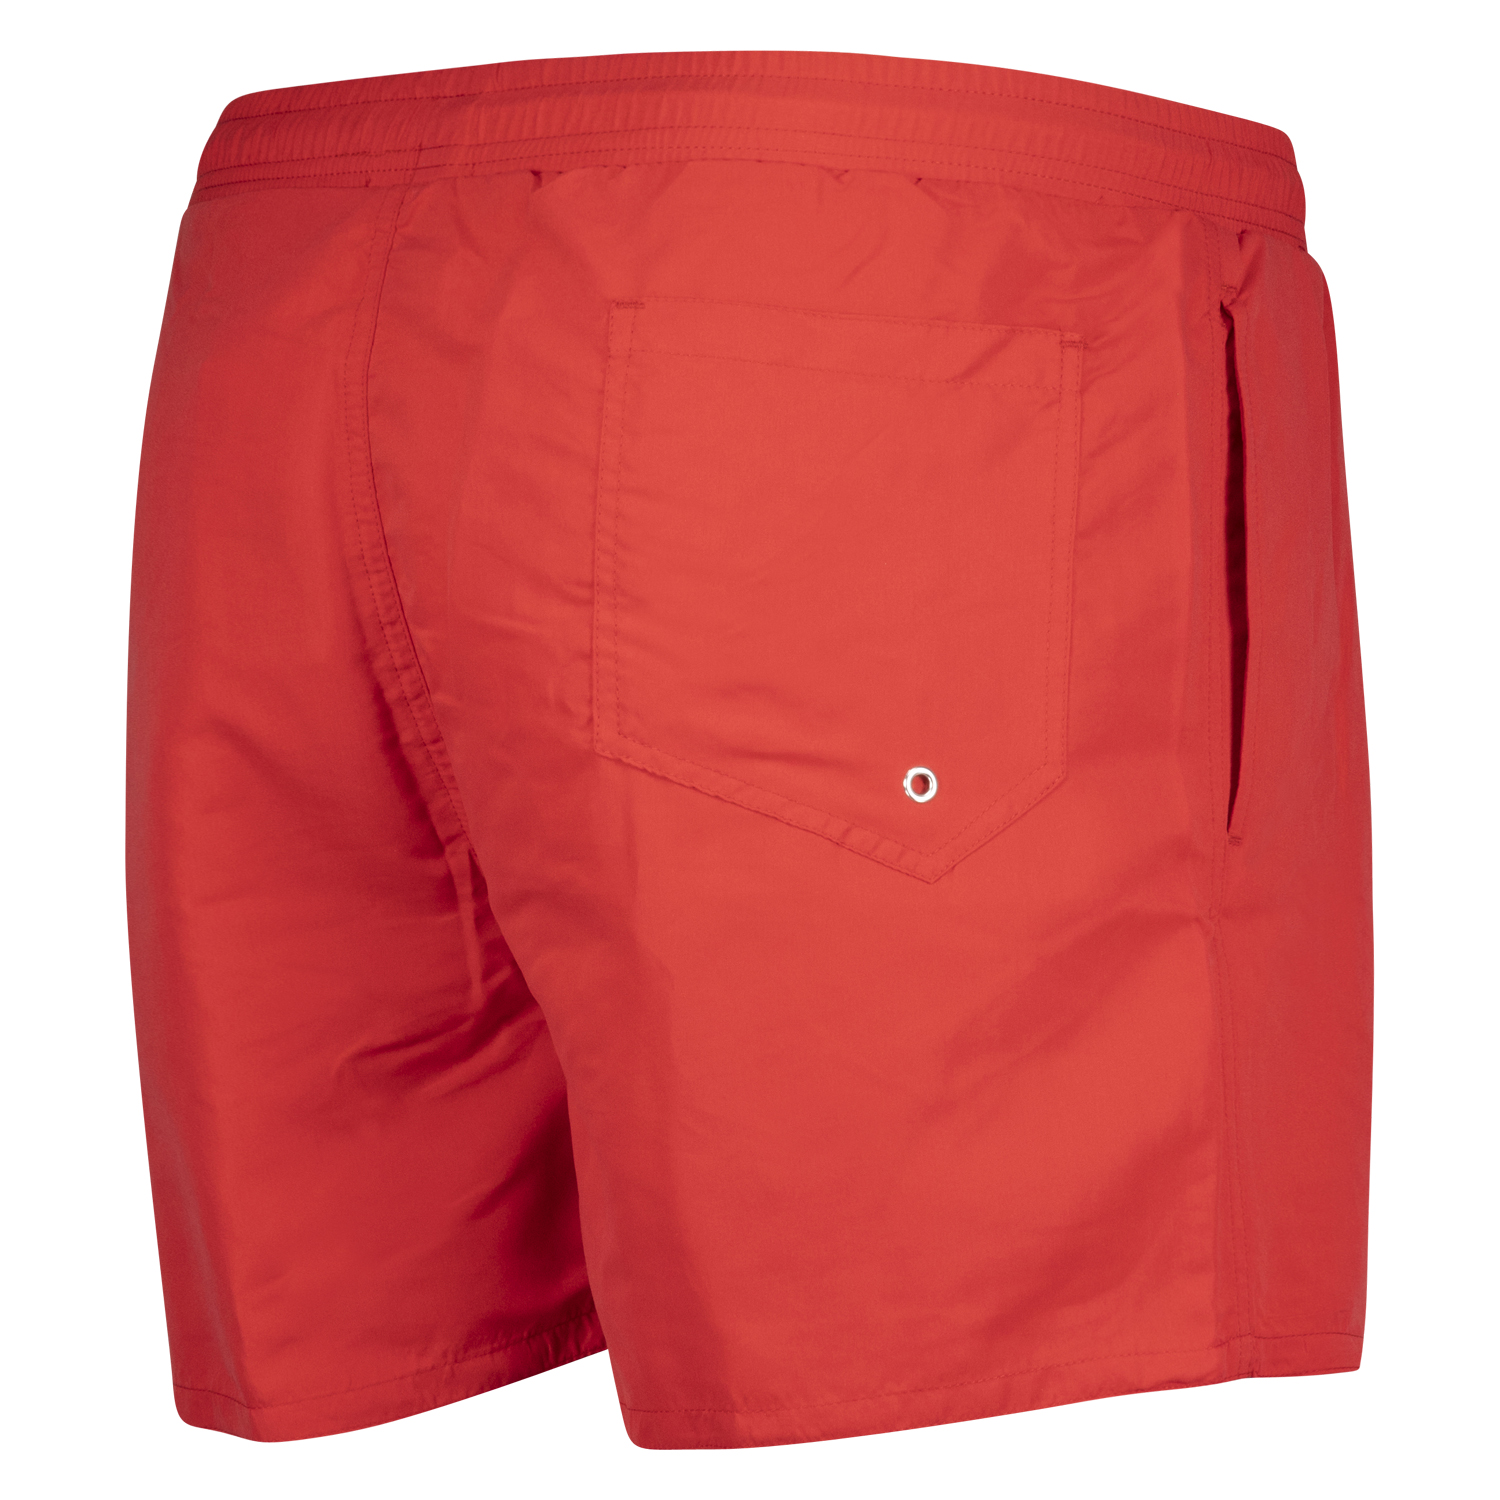 Rote Herren Badeshort Modell Jamaica von Adamo in Übergrößen bis 12XL